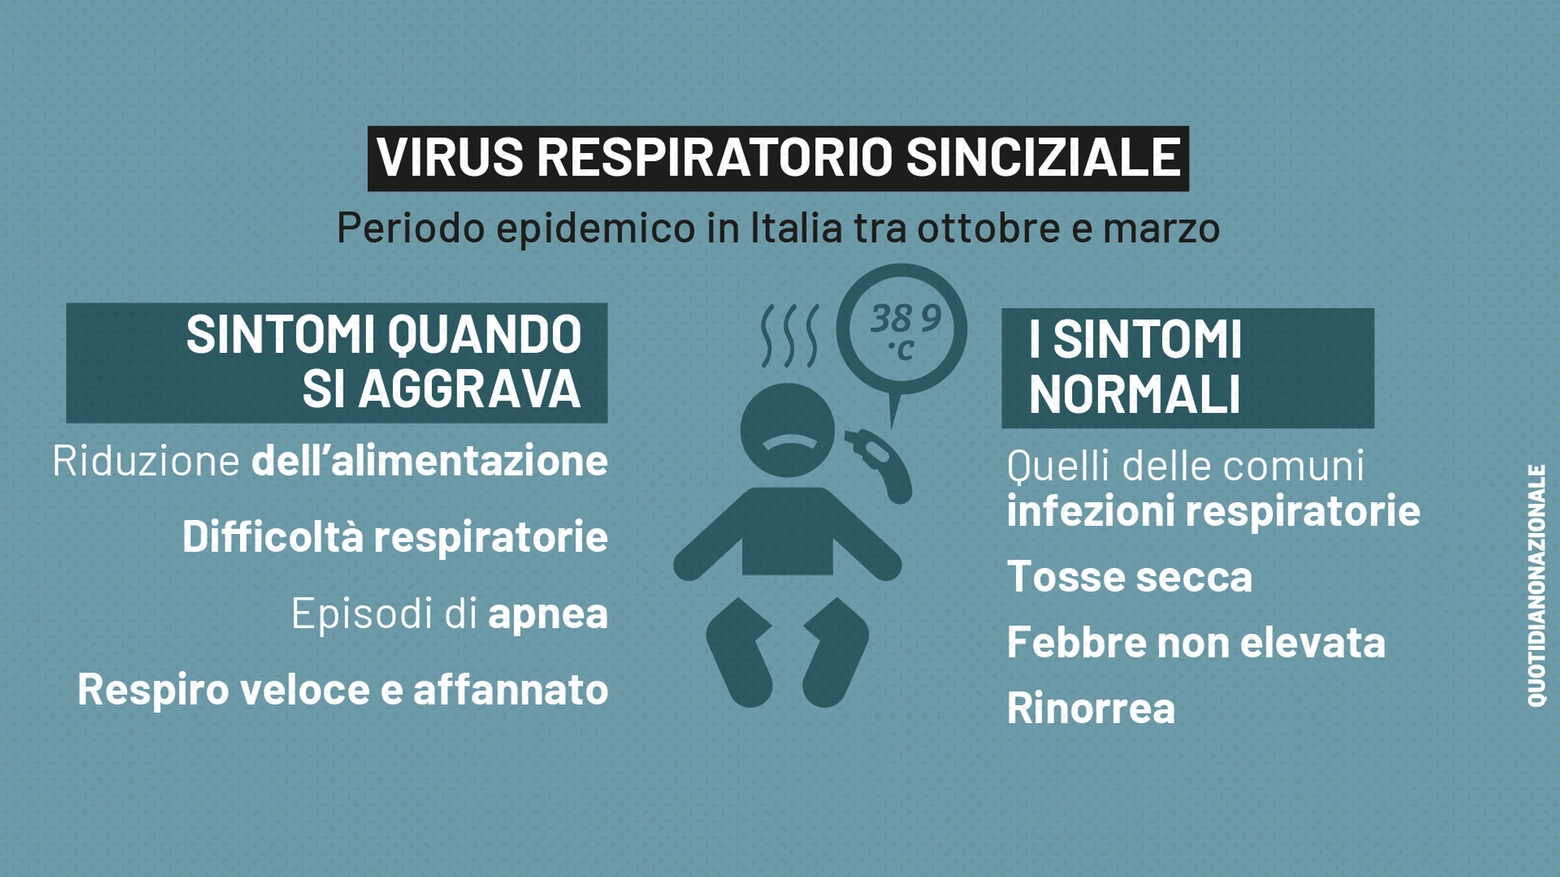 Virus respiratorio sinciziale, il grafico sui sintomi